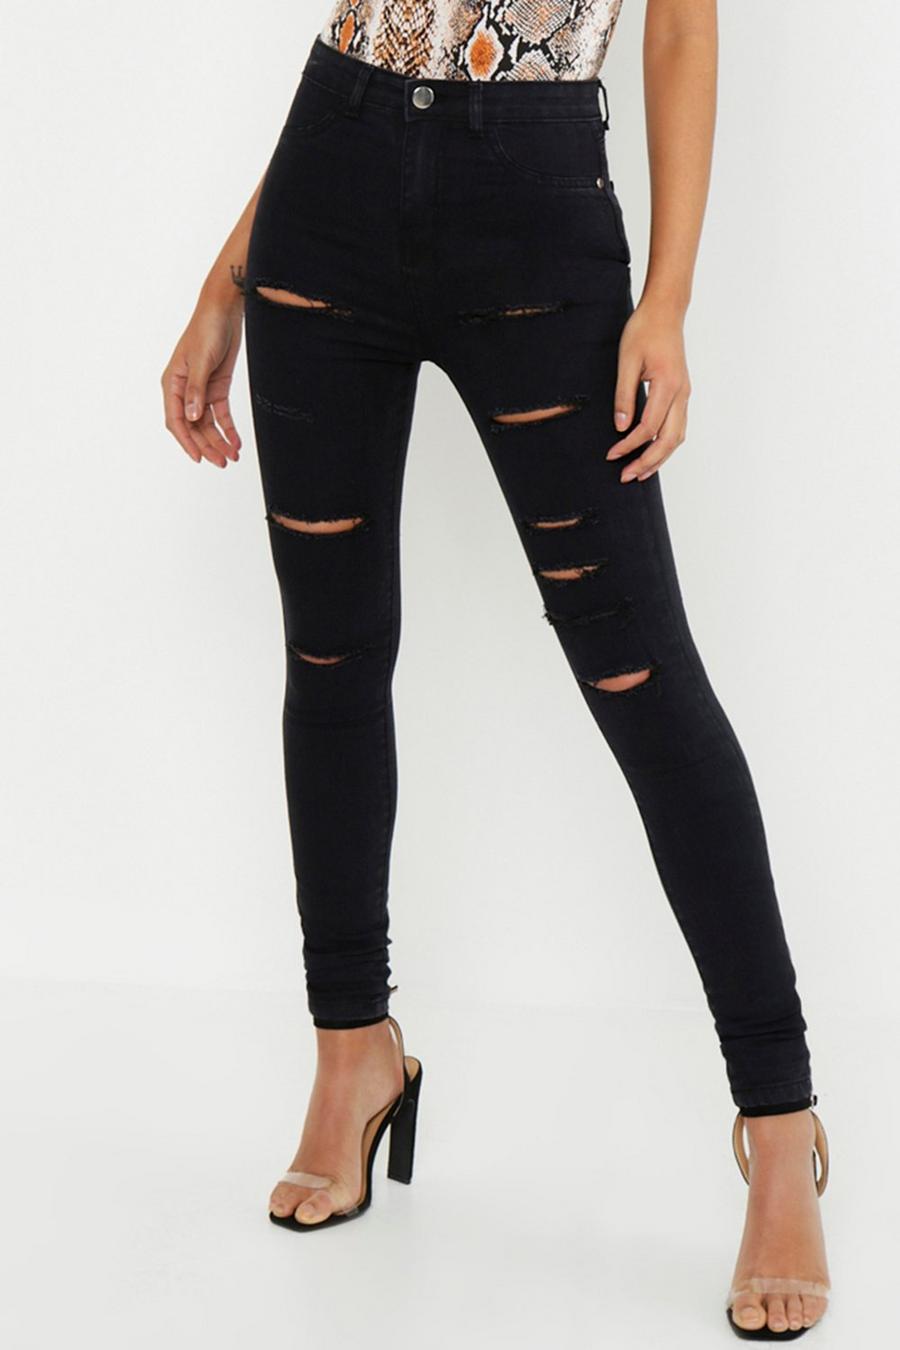 שחור nero טייץ ג'ינס עם חתכים רוחביים לנשים גבוהות